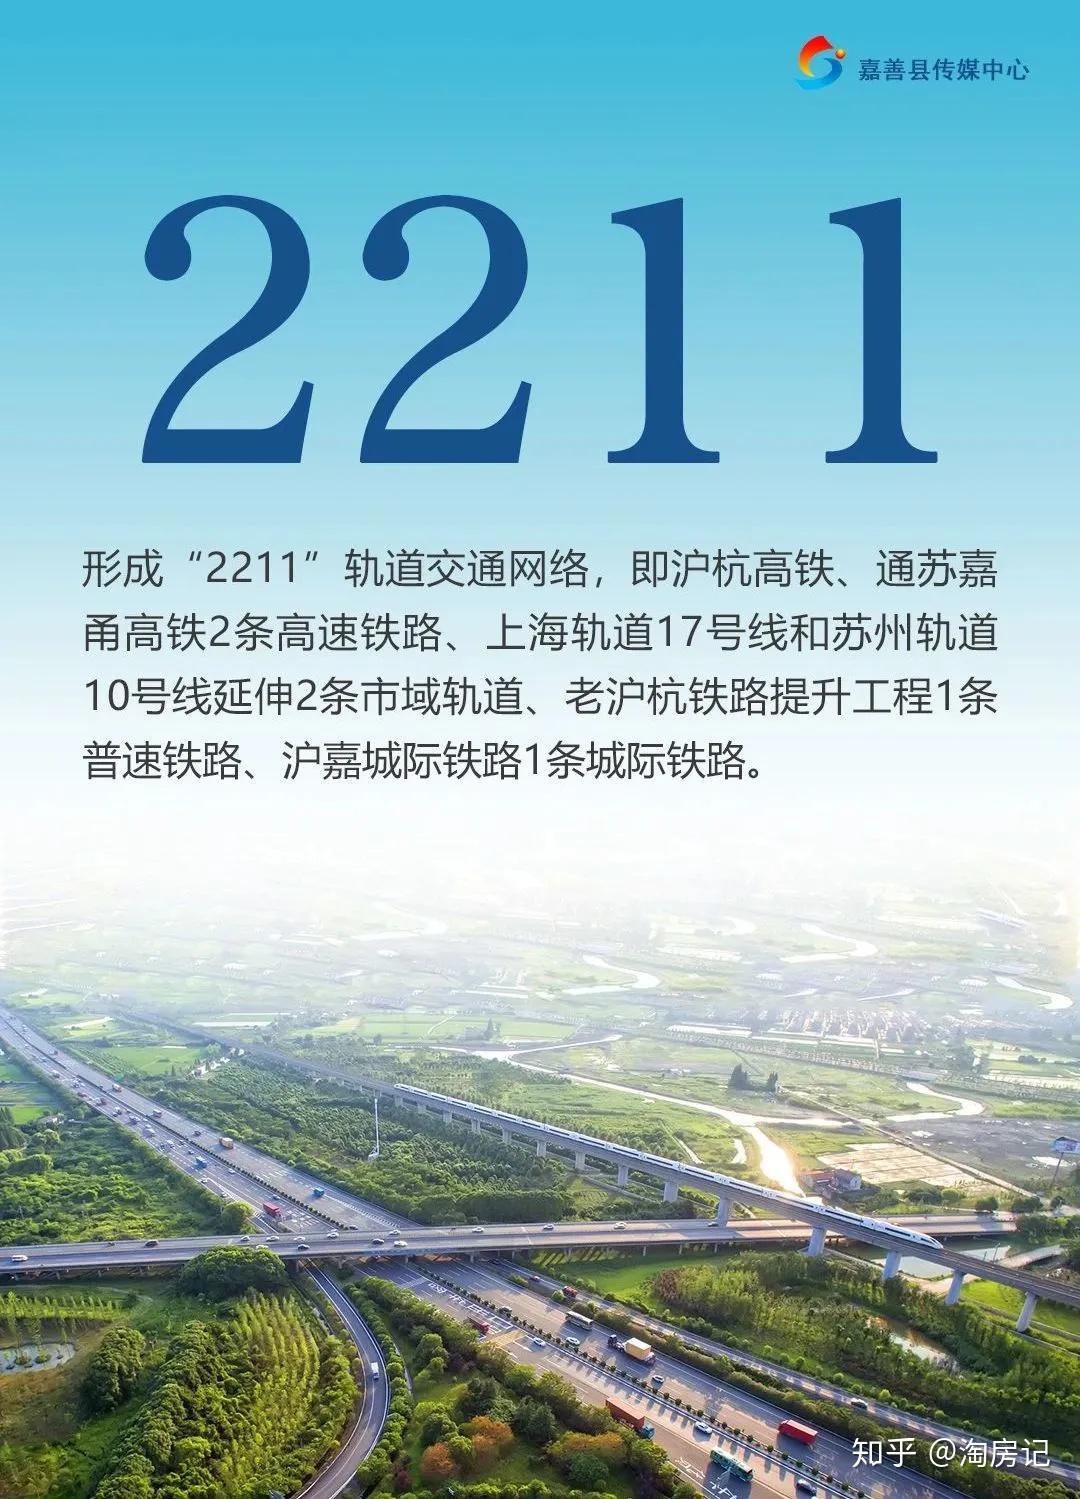 上海地铁9号线延伸枫泾姚庄示范1上海17苏州10号线都来了